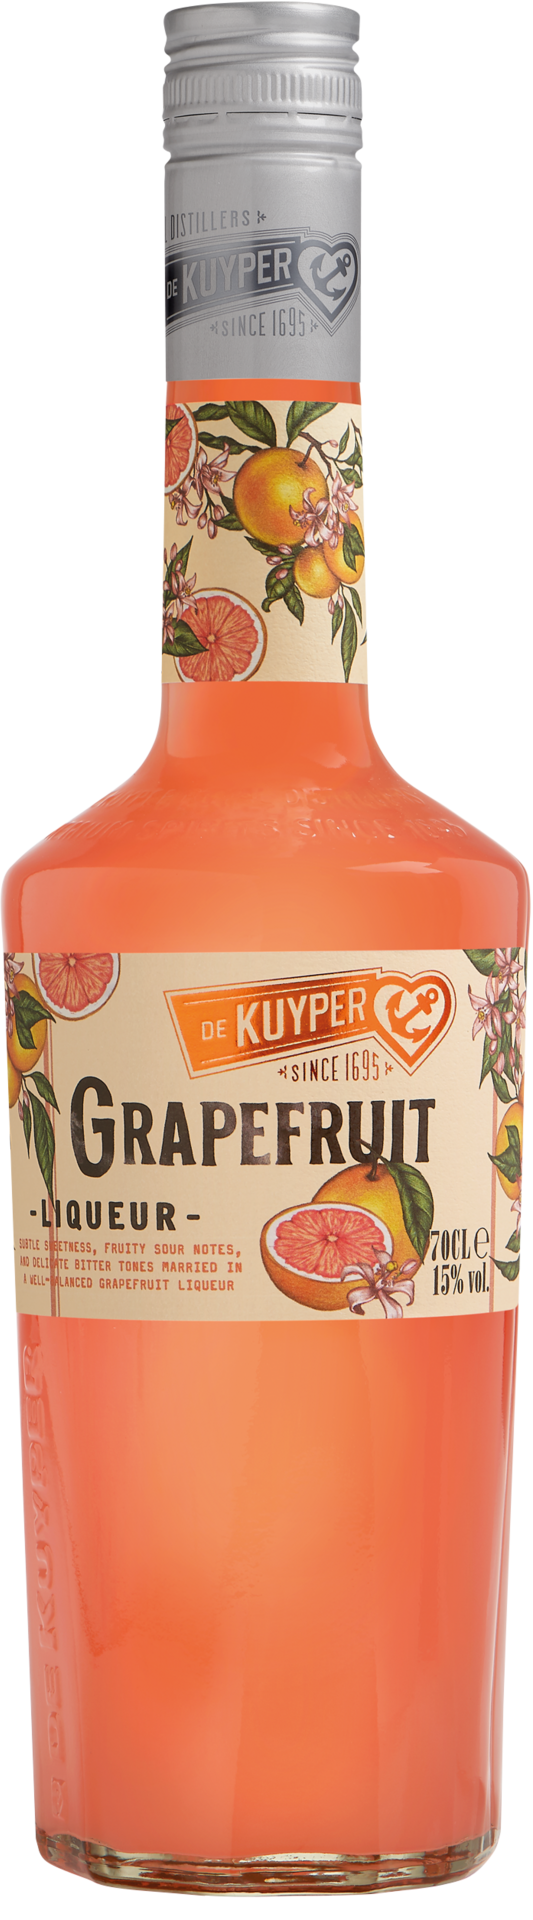 De Kuyper Grapefruit Liqueur - 0.7 l